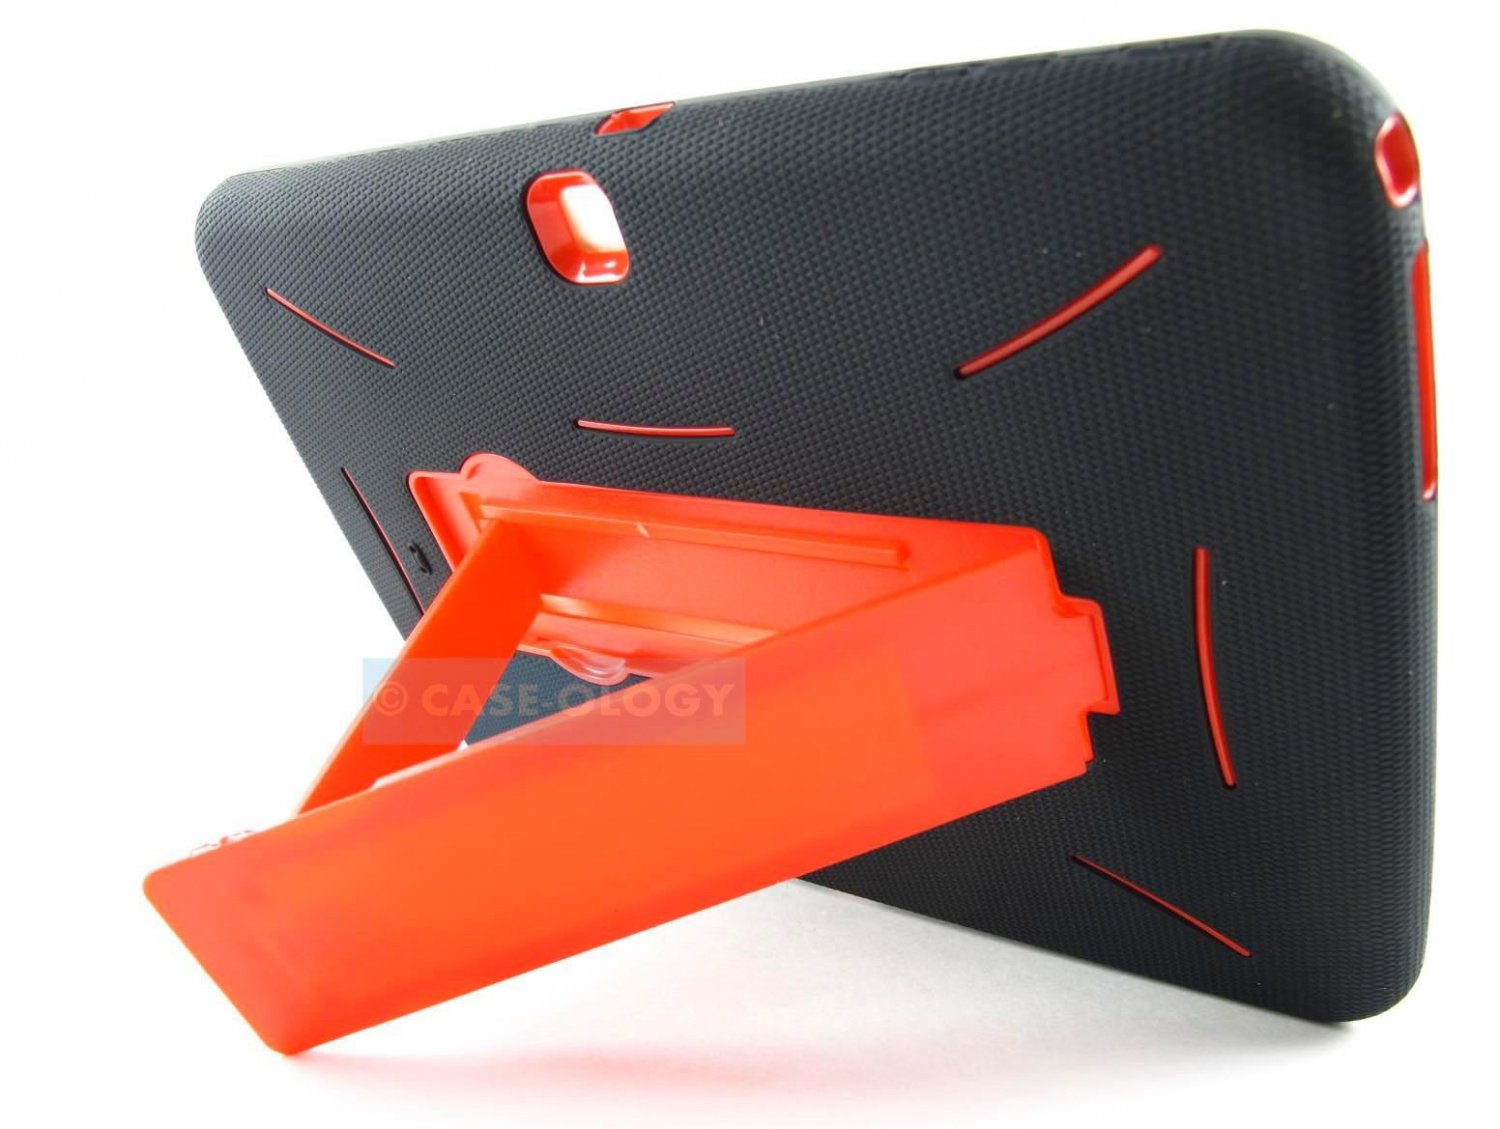 New Samsung Galaxy Tab III 310.0 Rugged Hybrid Armor Impact Black & Red Case Cov